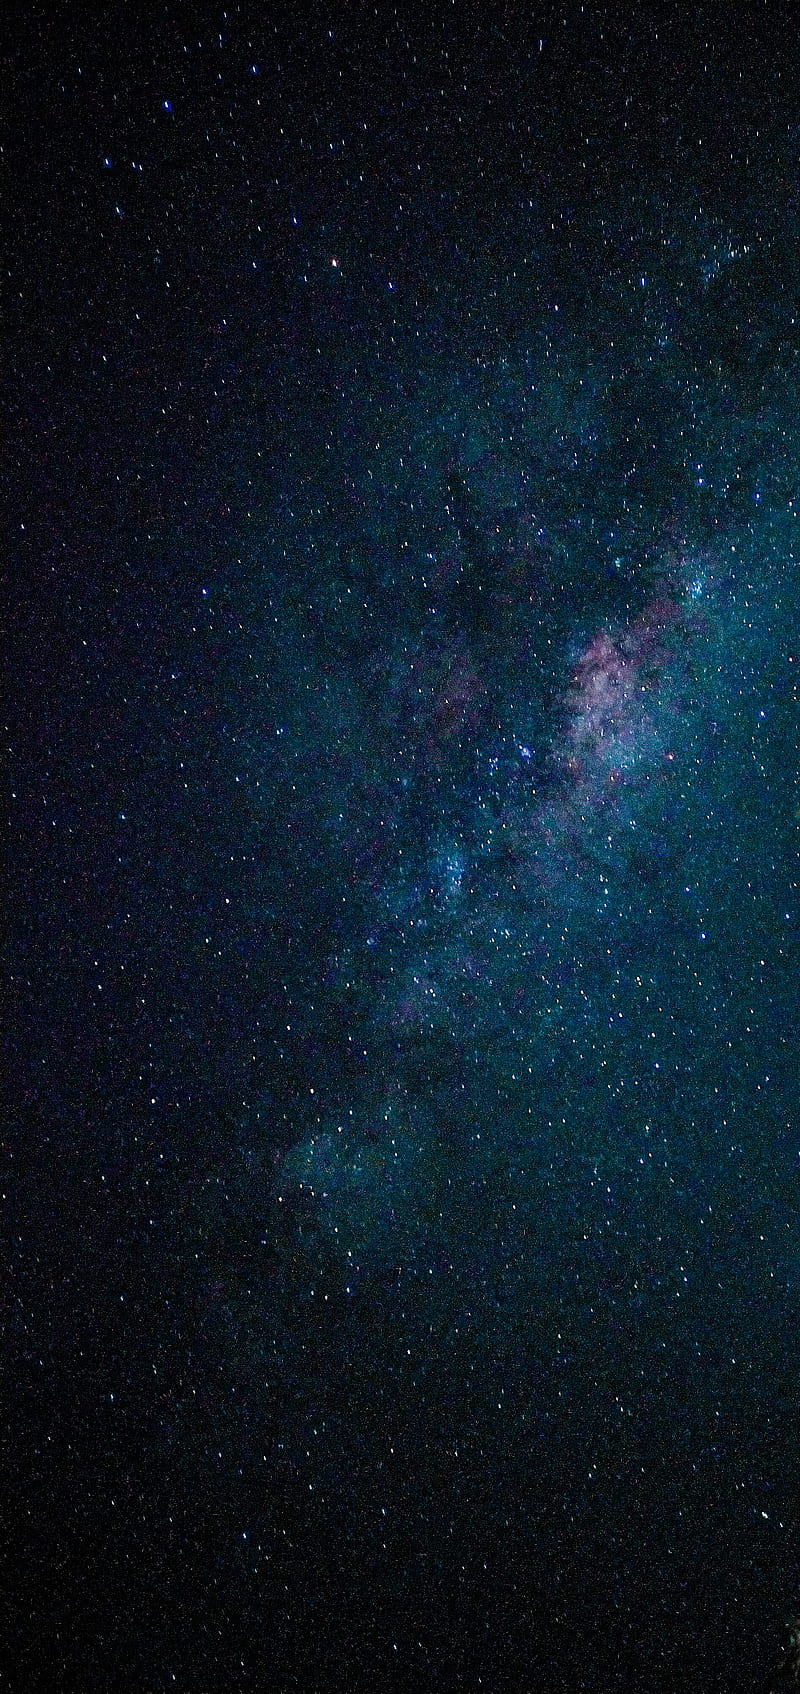 Hình nền Galaxy wallpaper 4K phone sẽ khiến cho bạn cảm thấy như đang ngắm vô vàn ngôi sao trong đêm tối. Điều này sẽ mang lại cho bạn cảm giác thư thái và bình yên. Hãy cùng chiêm ngưỡng bức hình liên quan đến từ khóa này để tận hưởng những phút giây thật tuyệt vời.